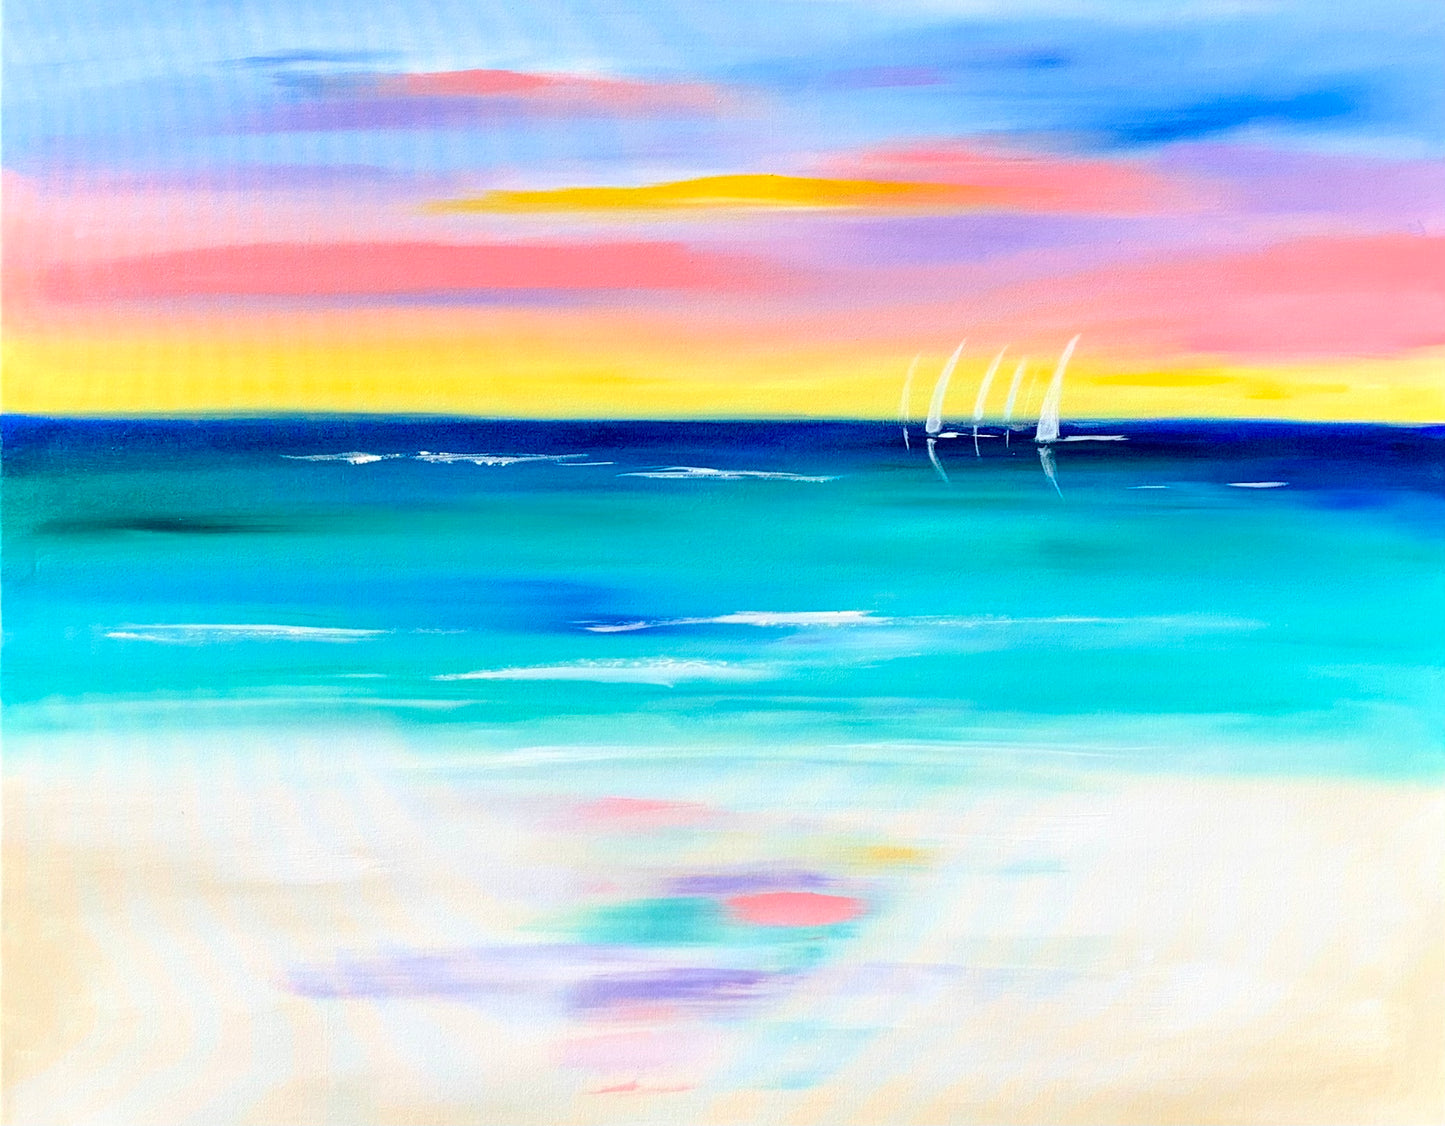 Beach vibes - Sunset Skies